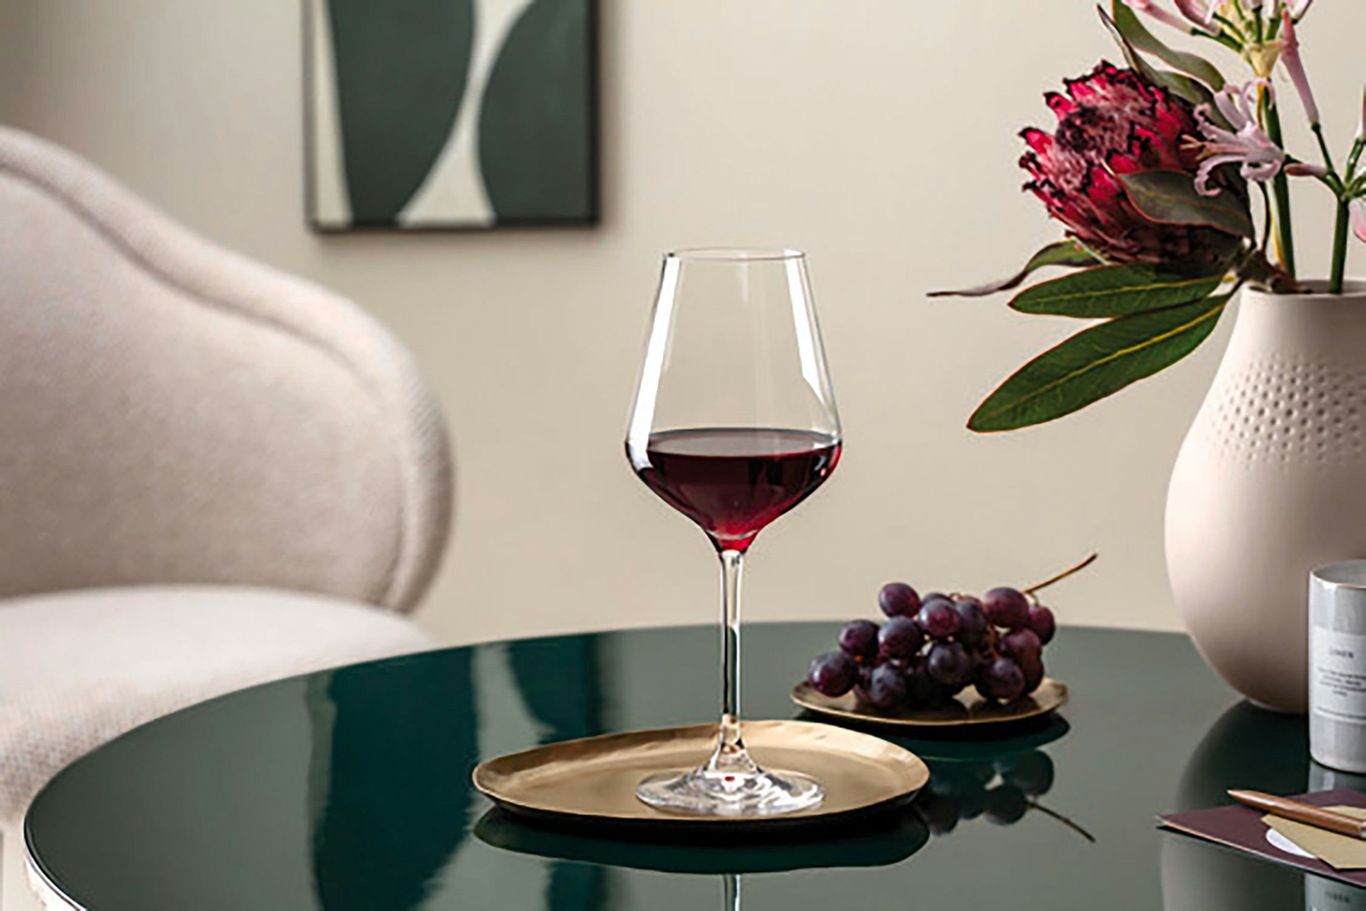 https://royaldesign.com/image/2/villeroy-boch-la-divina-red-wine-goblet-set-4pcs-3?w=800&quality=80